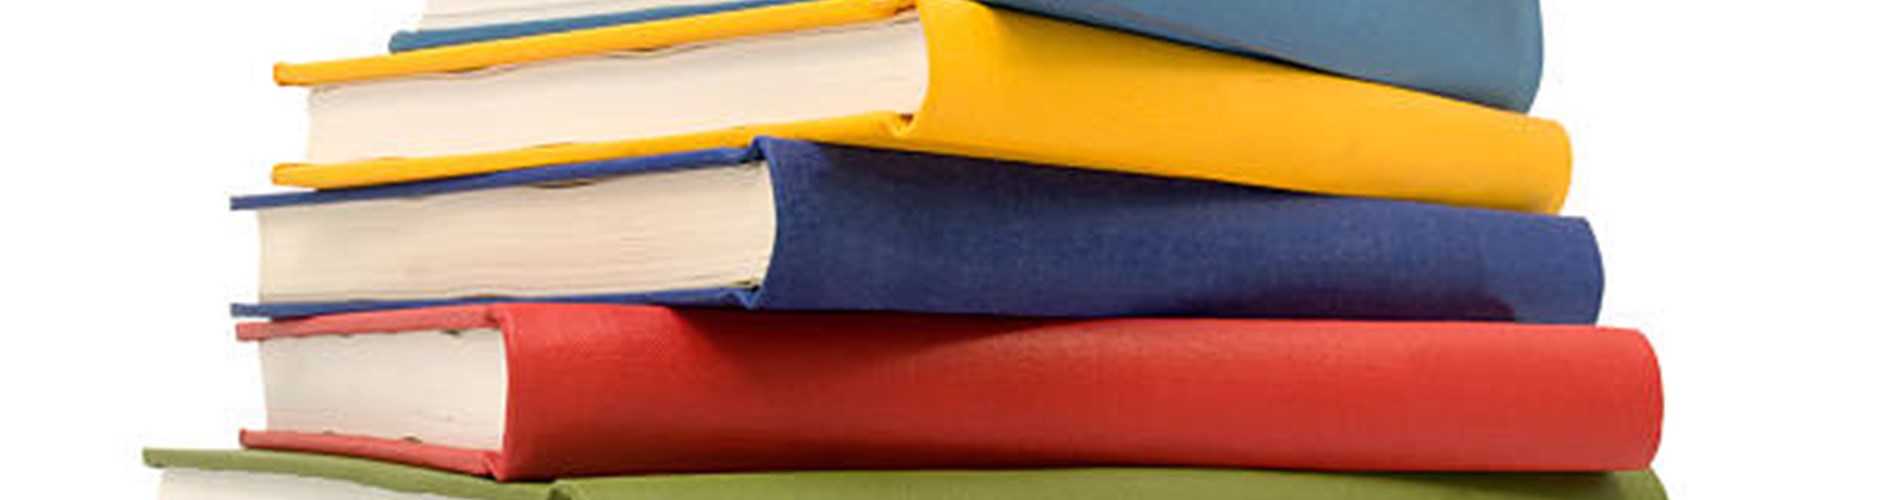 Fornitura gratuita e semigratuita dei libri di testo per l’anno scolastico 2014/2015